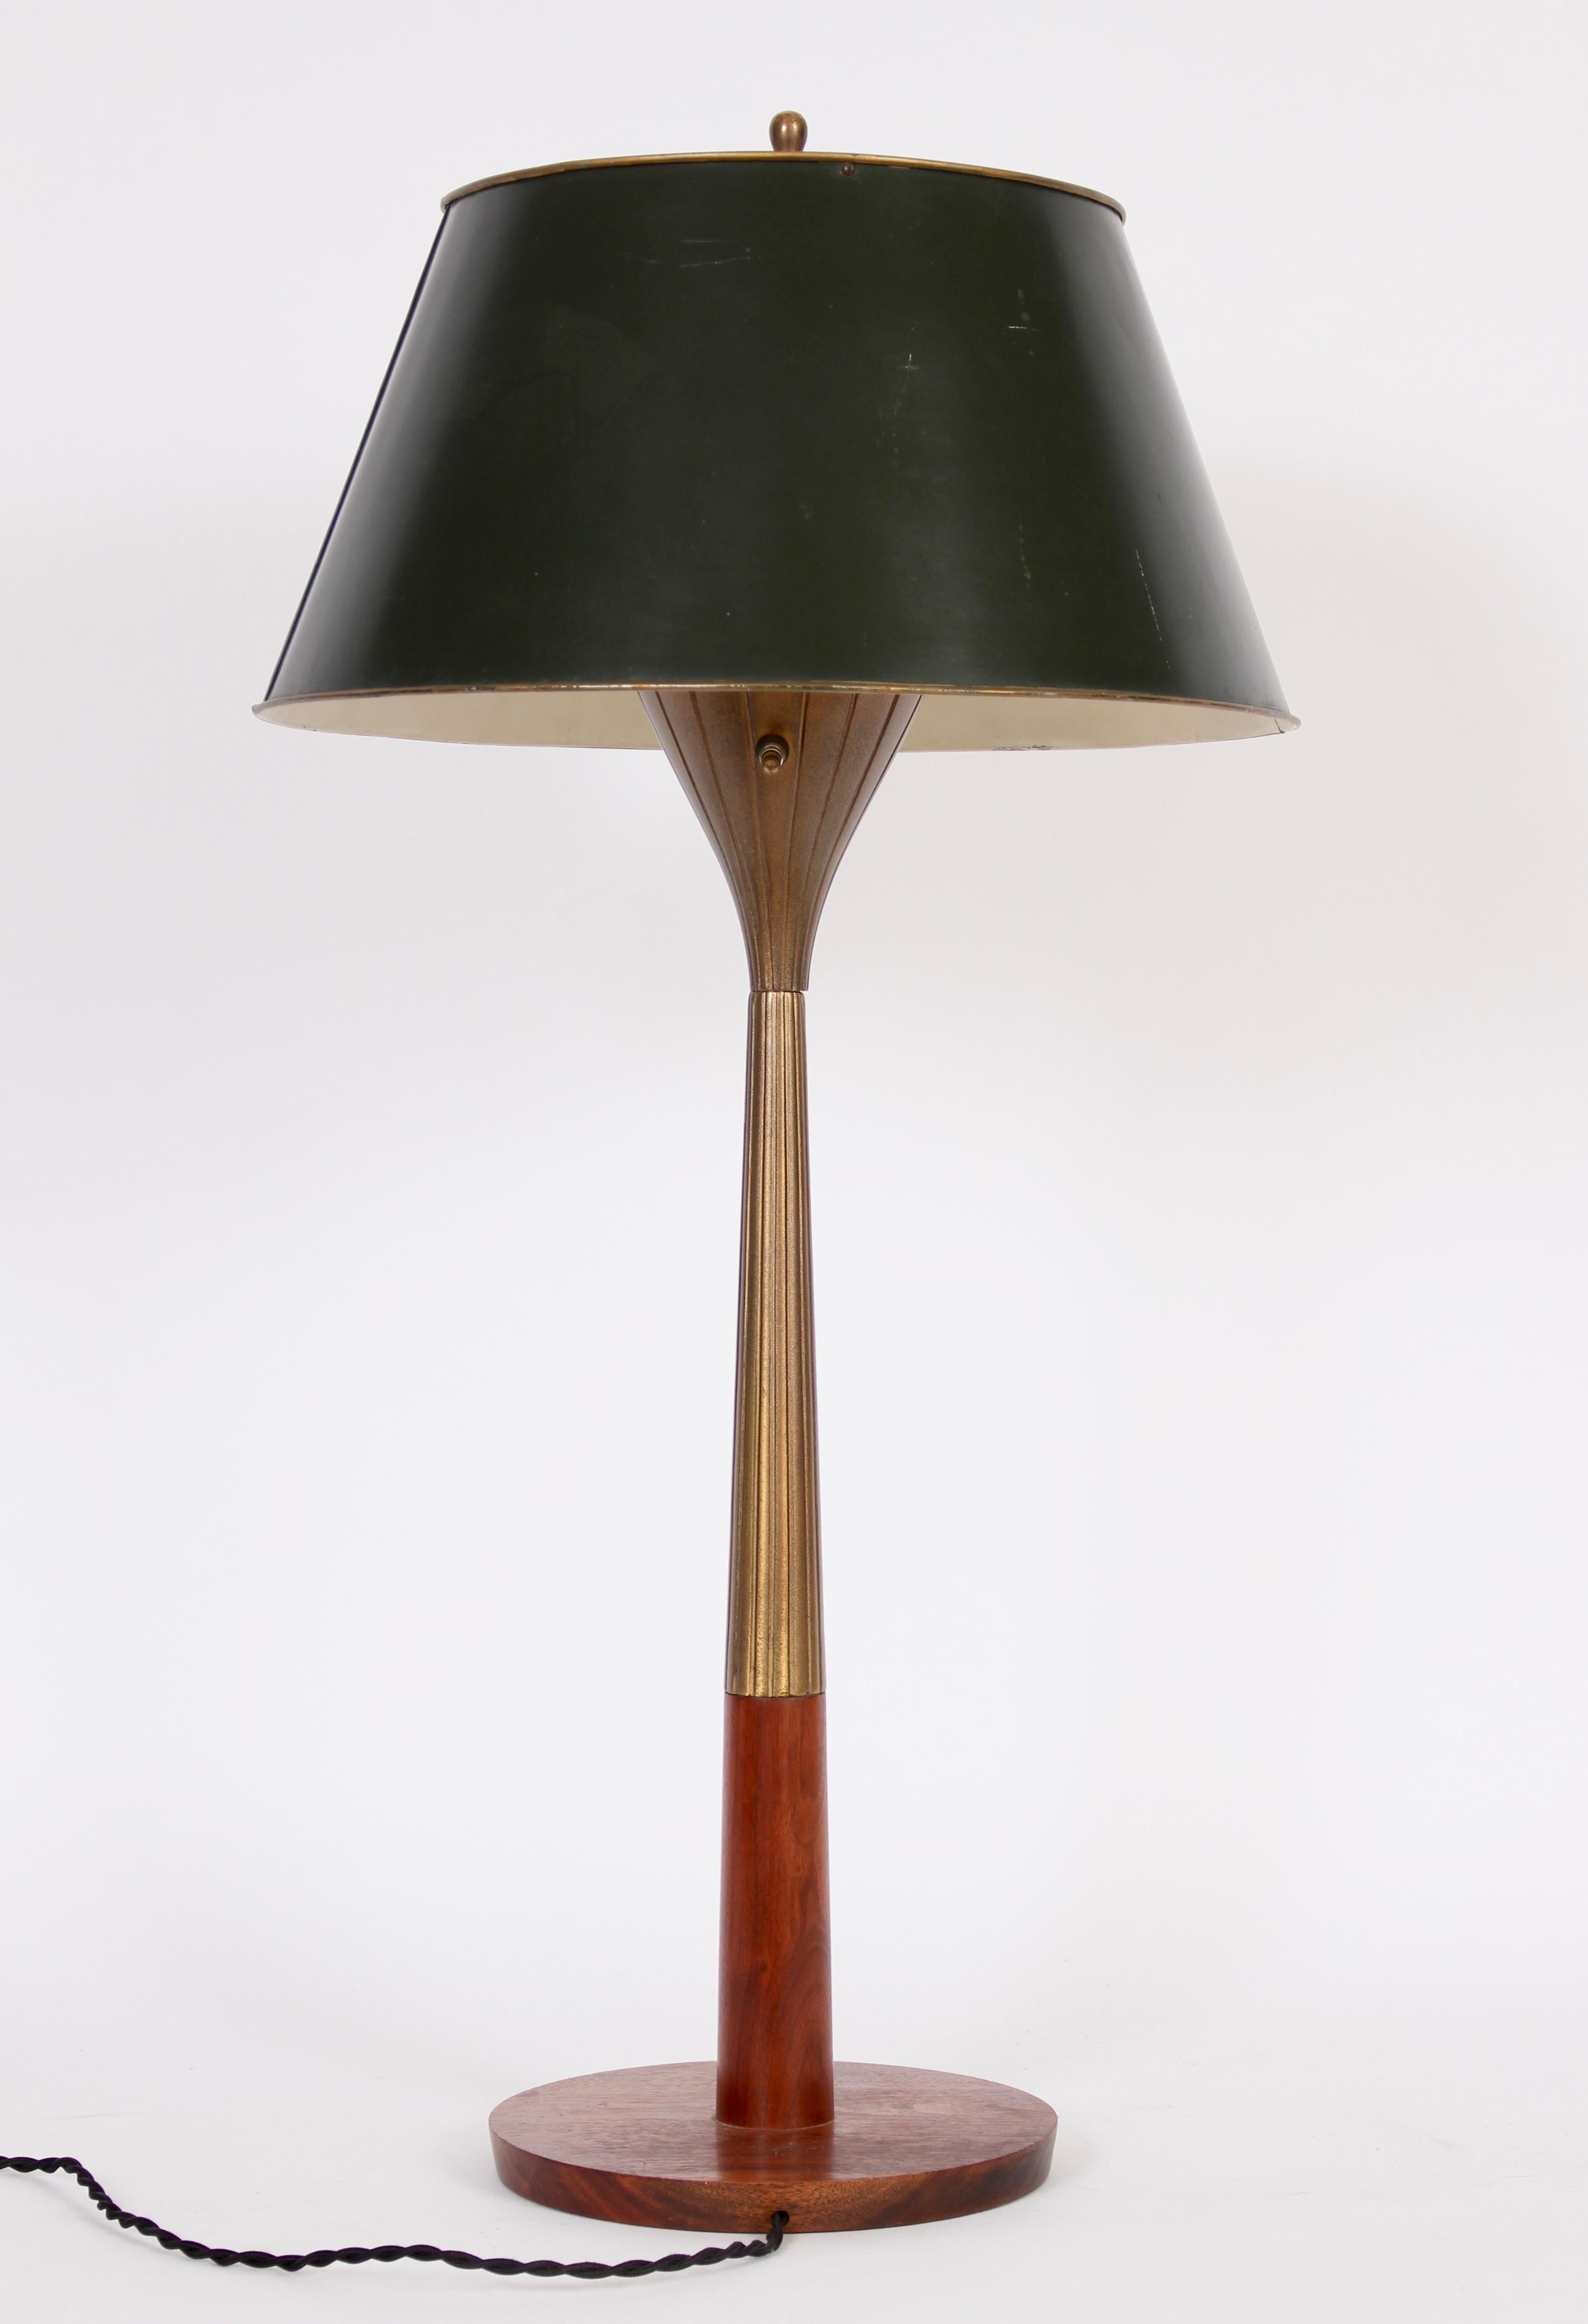 Gerald Thurston für Lightolier 3' H ausgestellter und eingeschnittener Messing- und Nussbaumtischlampe, um 1960. Mit einem strahlenden, vertikal ausgerichteten, antikbronzierten Oberteil und einem Teil des Stiels mit einem nussbaumfarbenen Unterteil